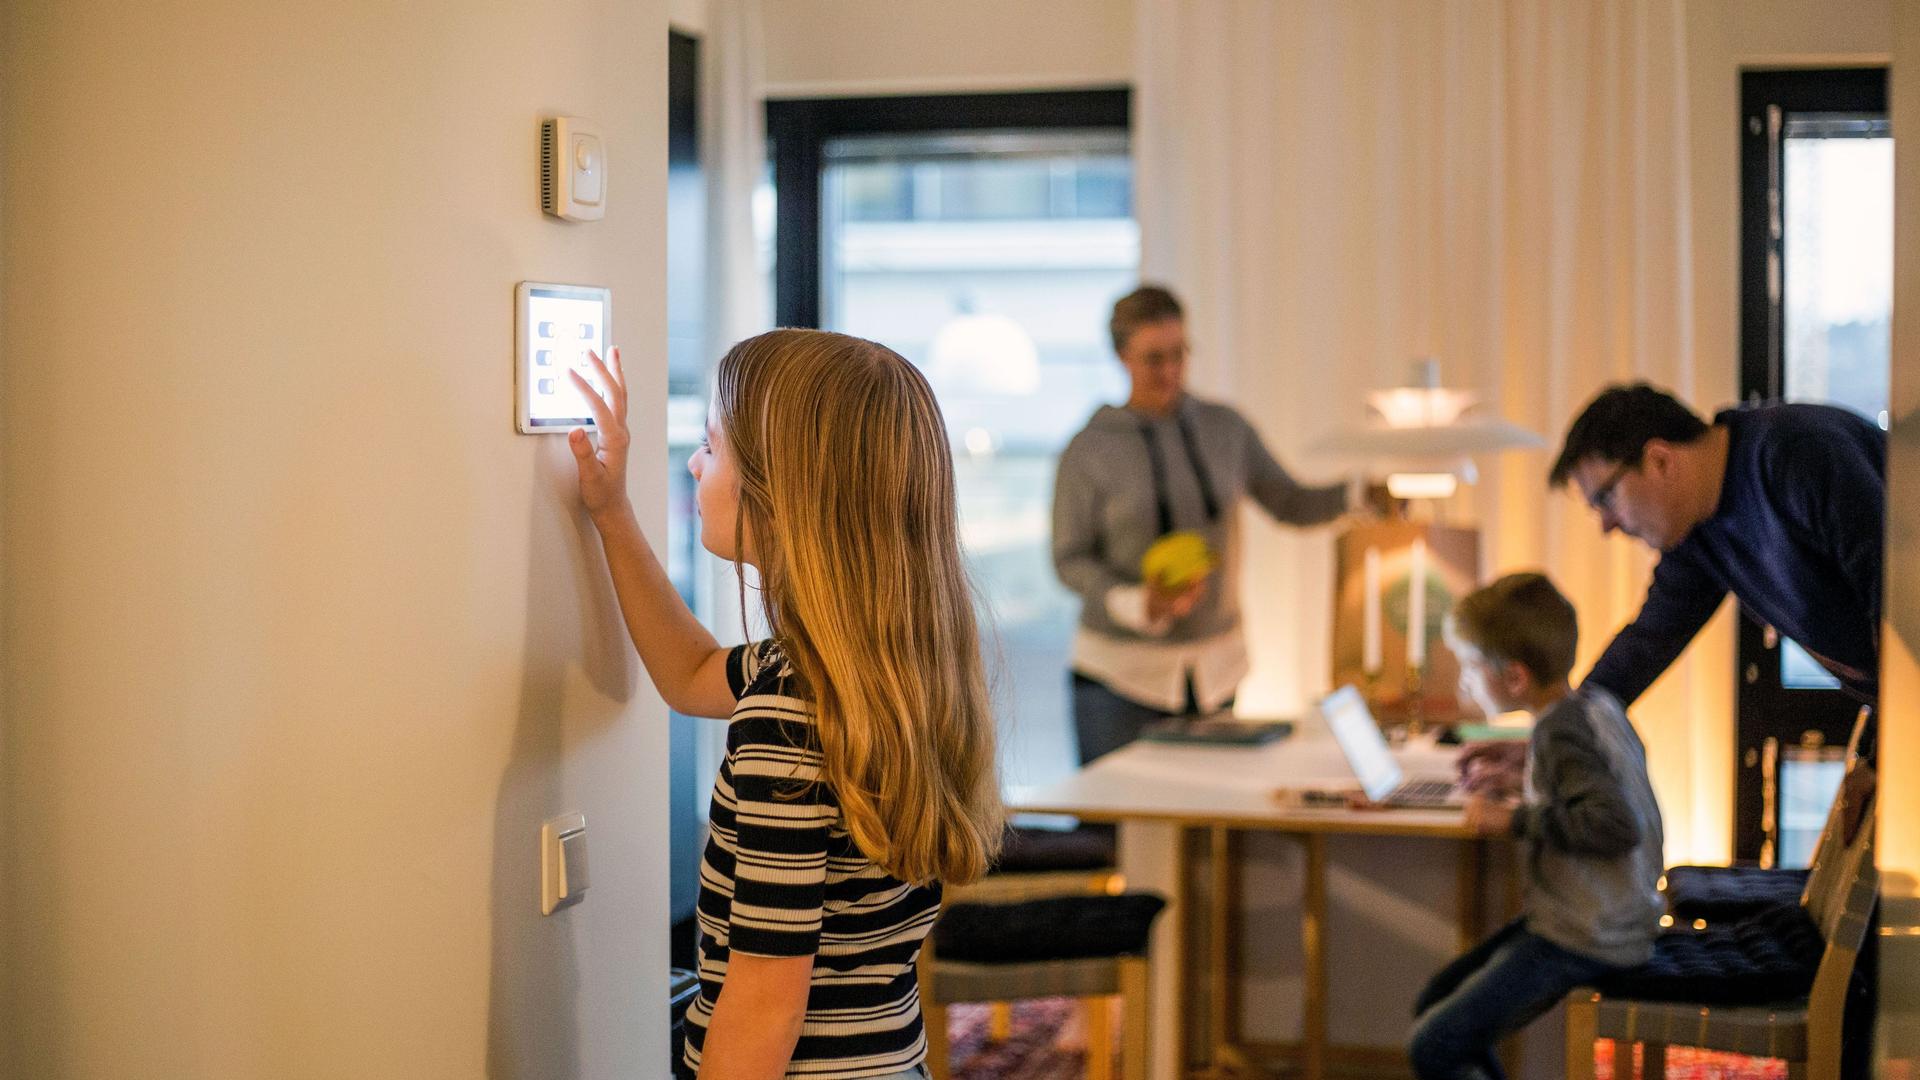 Mädchen bedient digitales Smart Home Display an der Wand. Im Hintergrund ist unscharf die Familie zu erkennen.